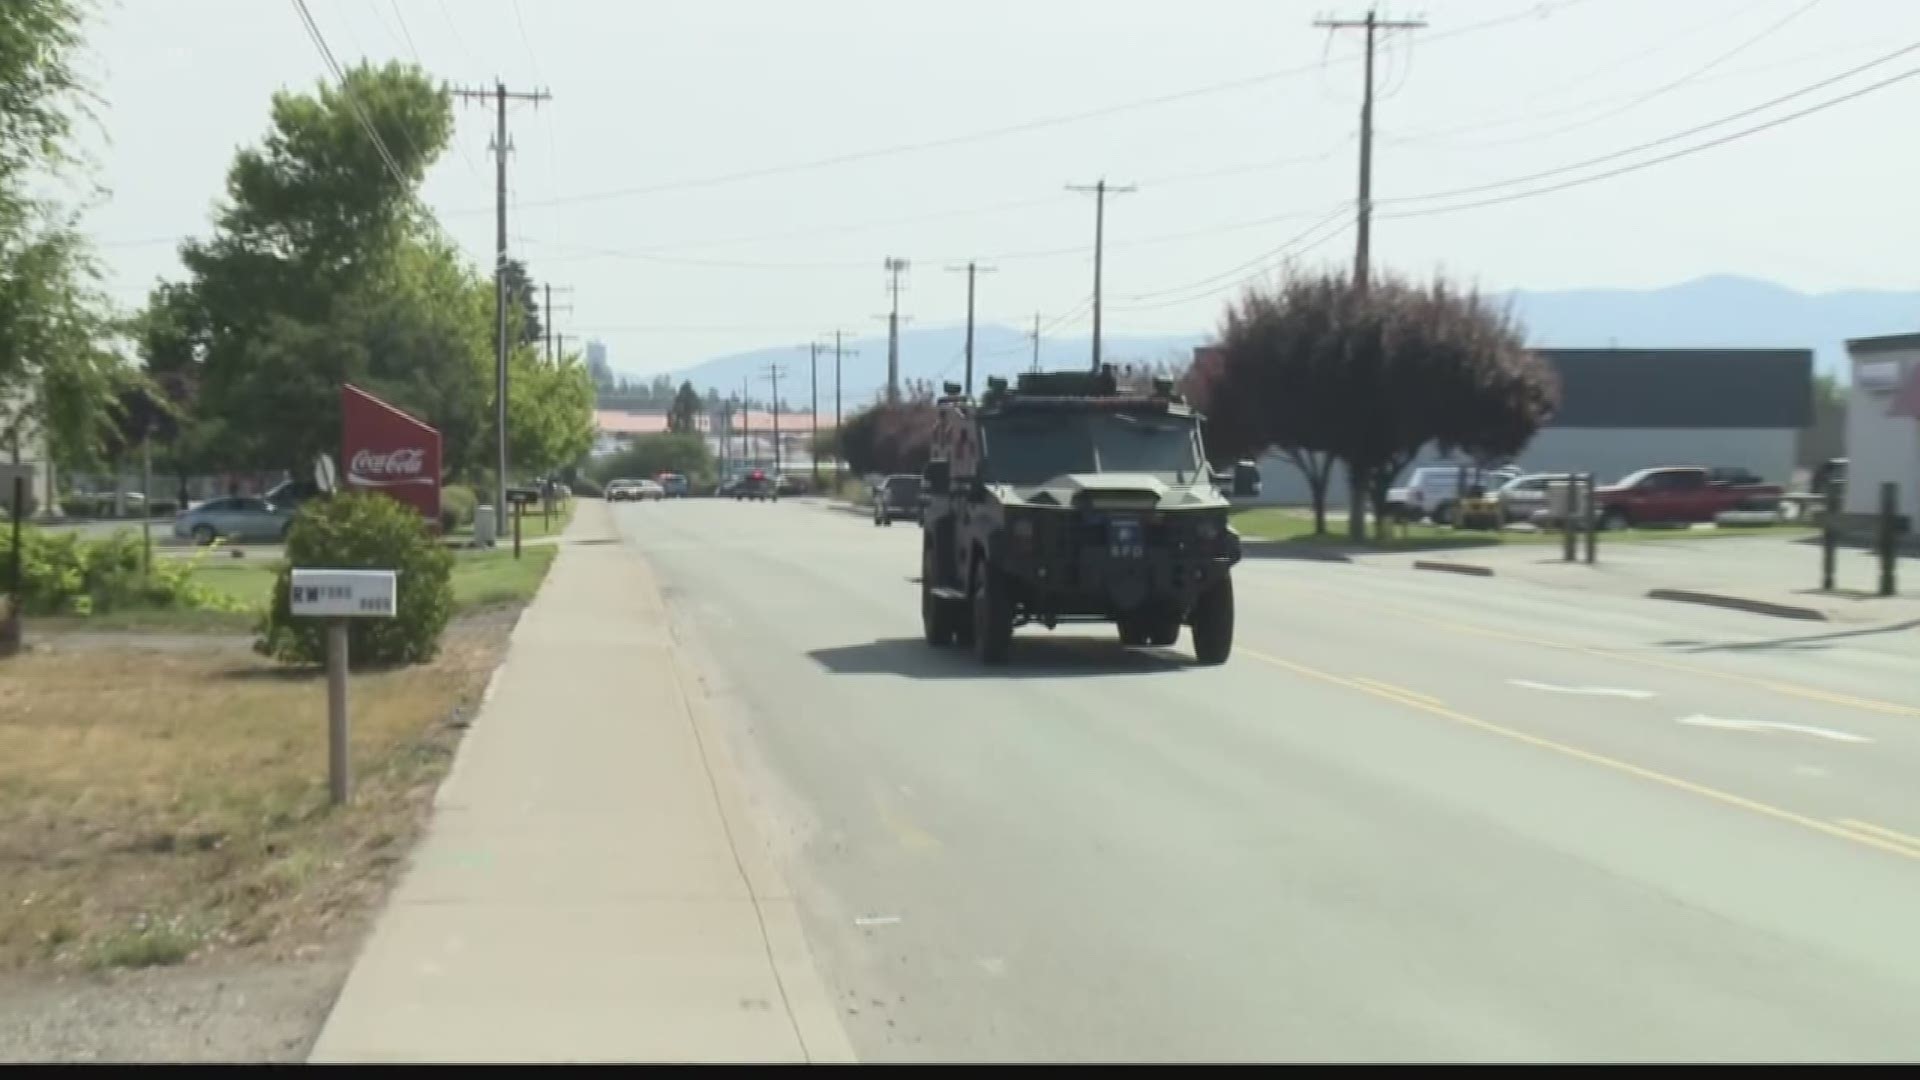 Witnesses describe Spokane Valley shooting